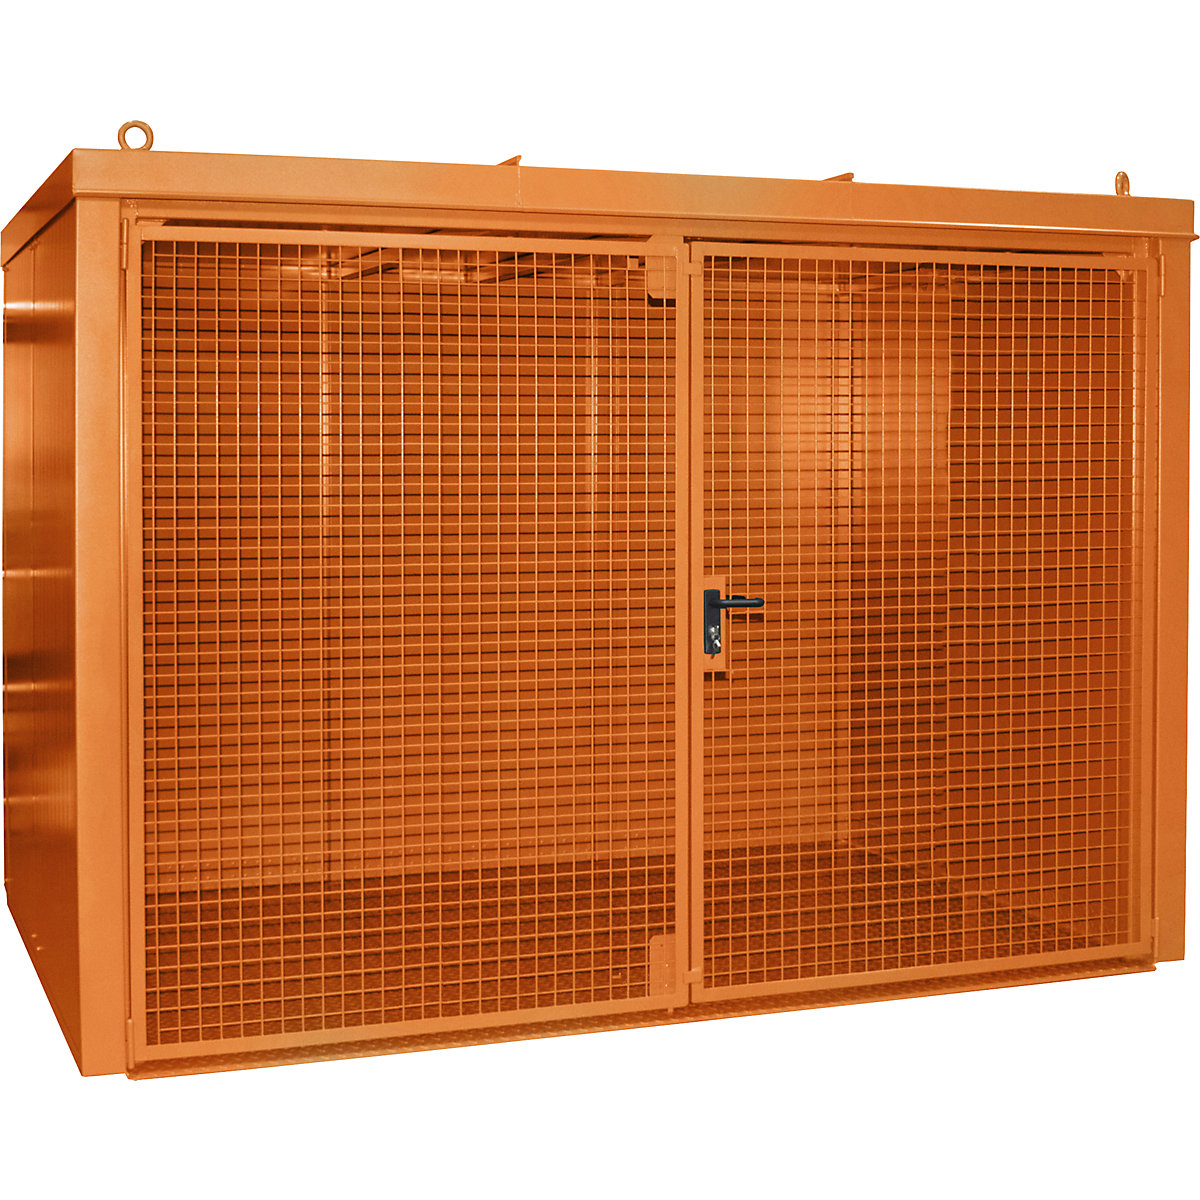 Gázpalacktároló konténer, tűzálló – eurokraft pro, 60 db, egyenként 230 mm átmérőjű palackhoz, narancssárga-4